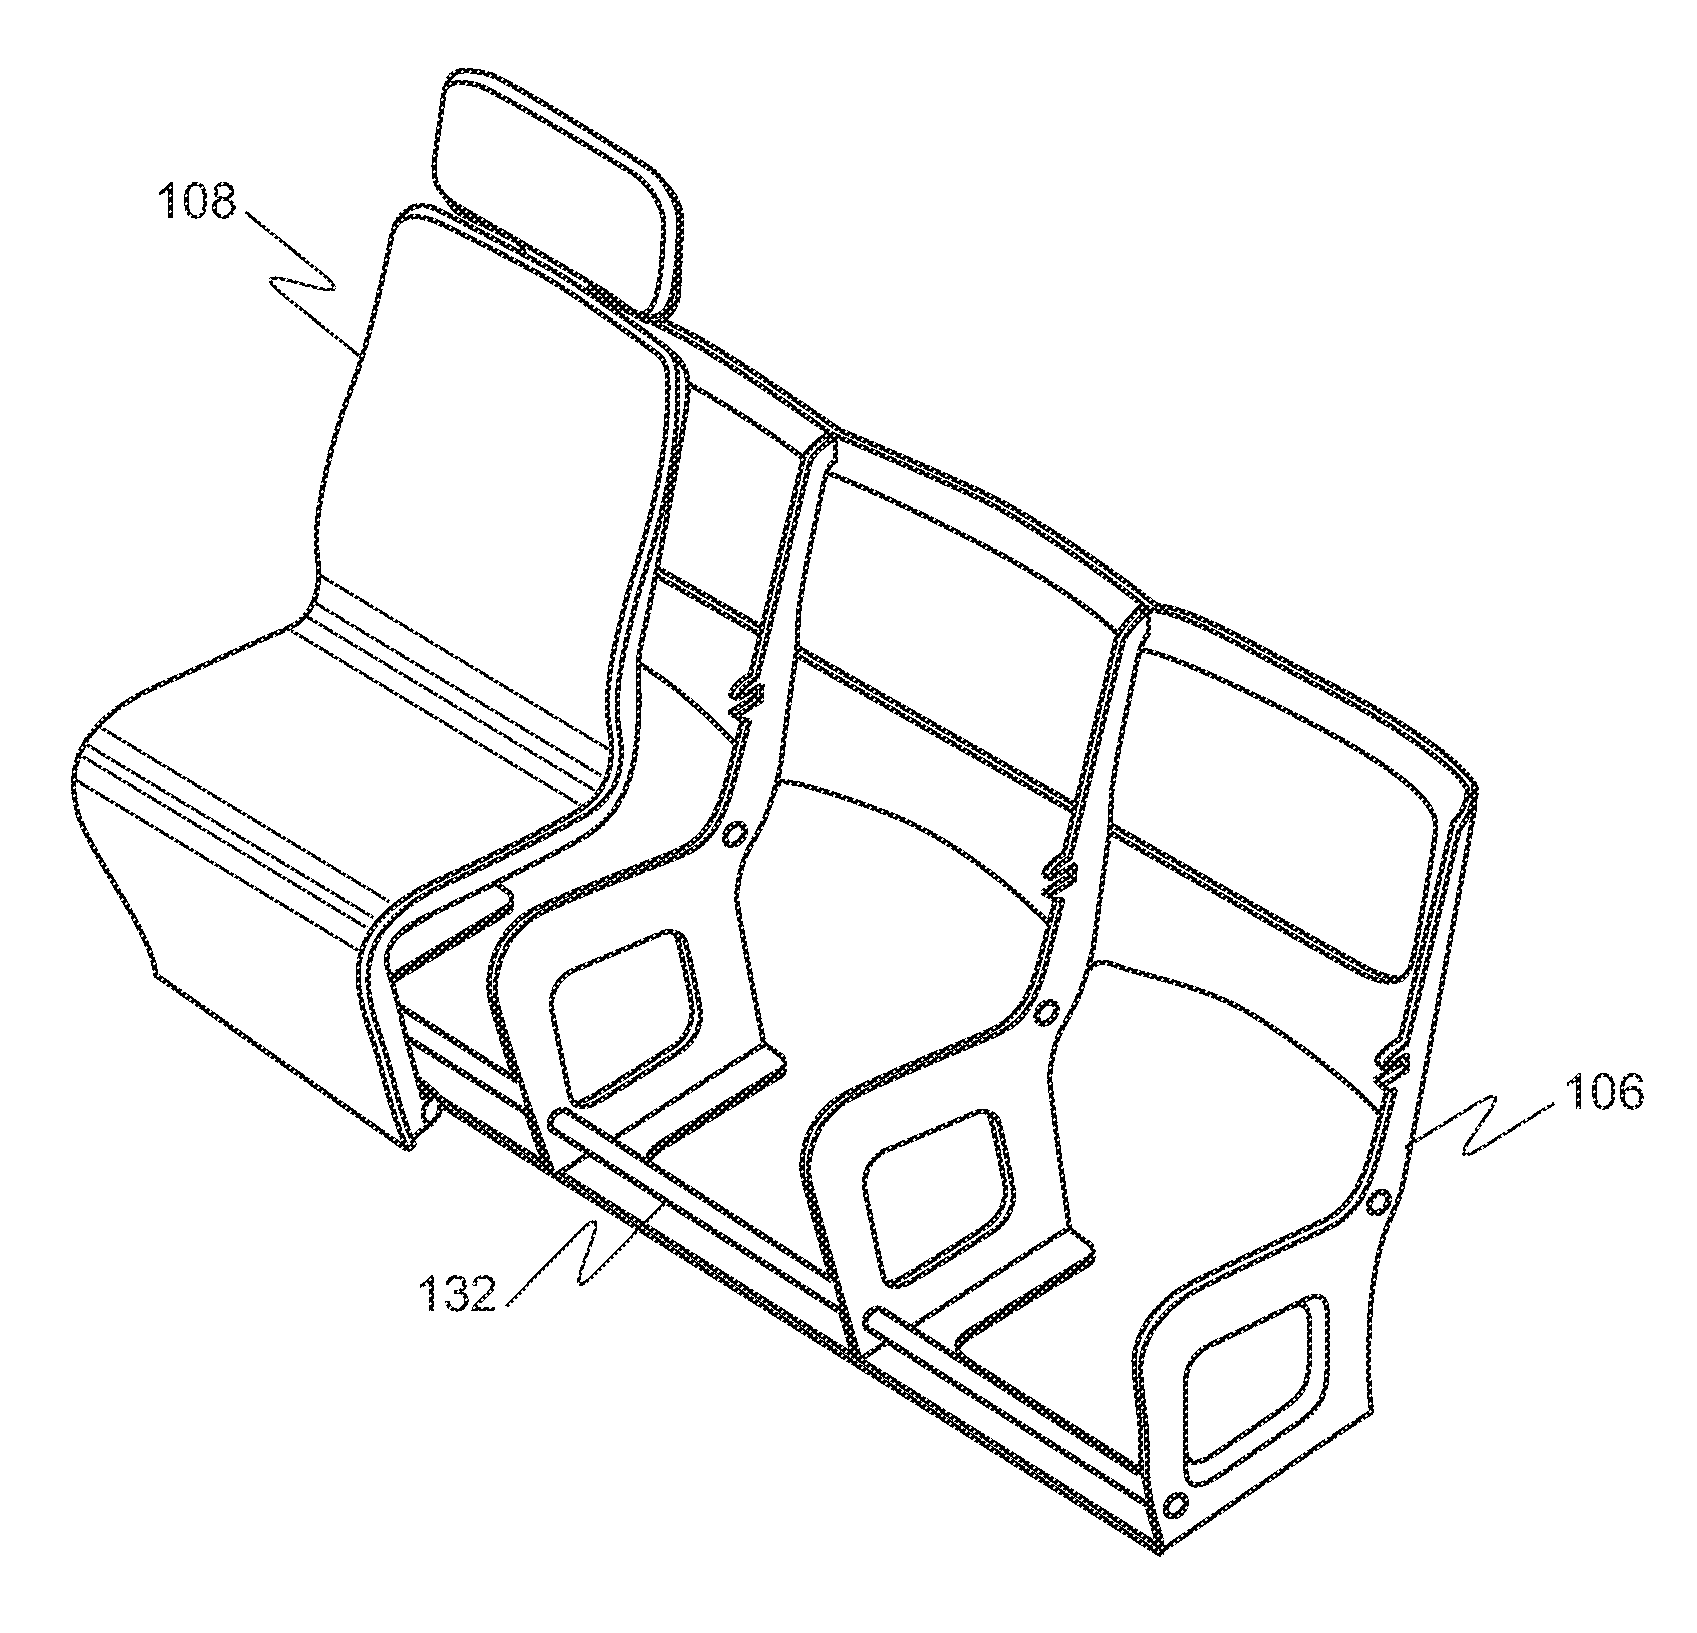 Modular passenger seat for an aircraft